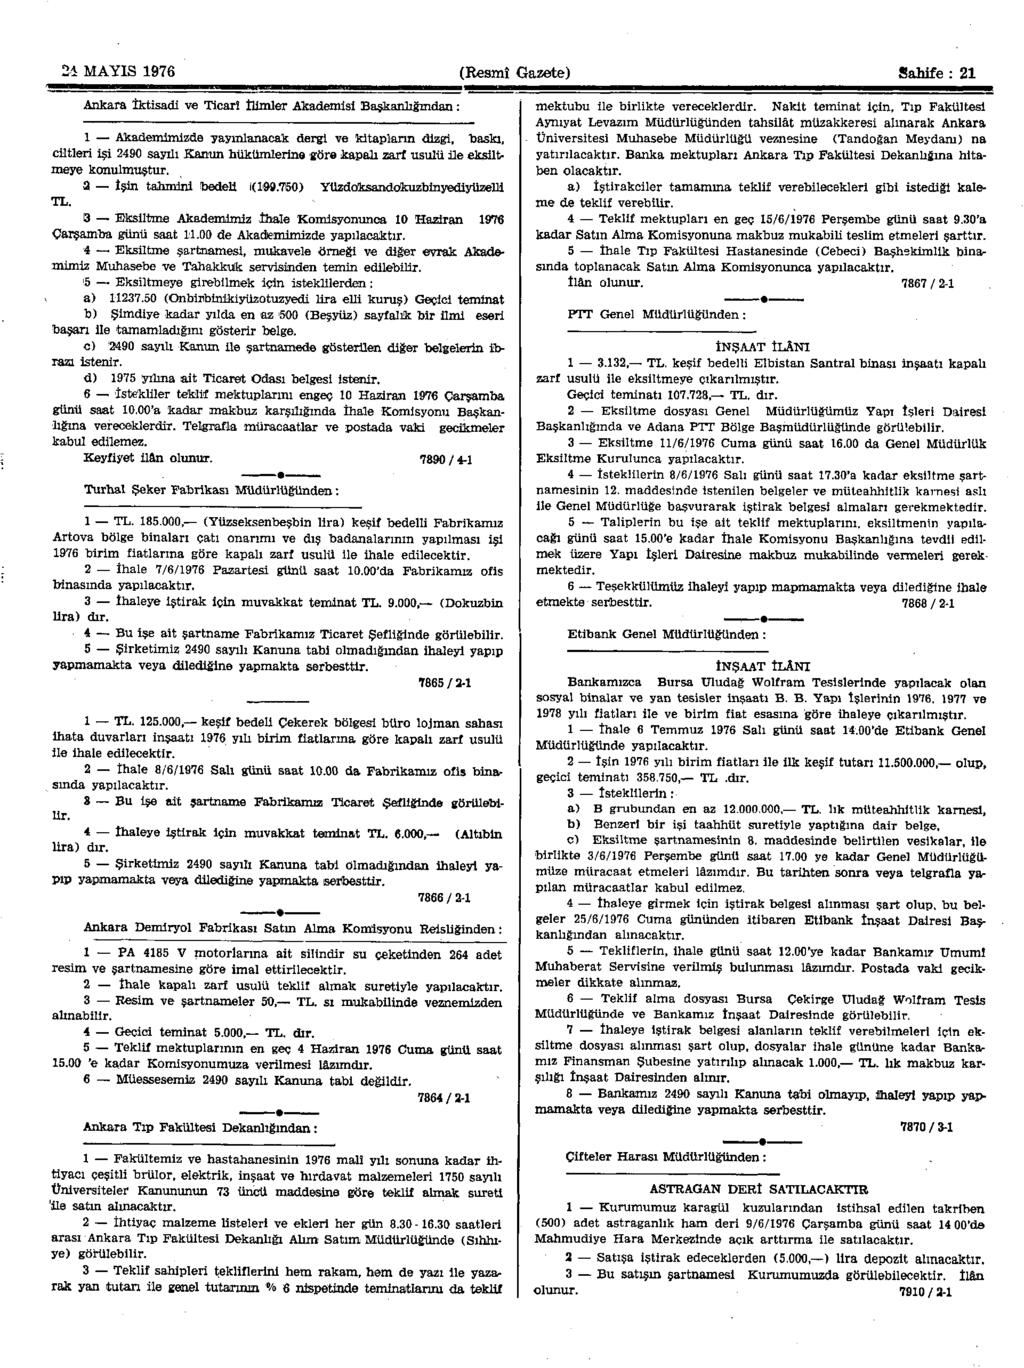 2i MAYIS 1976 (Resmî Gazete) Sahife : 21 Ankara İktisadi ve Ticarî İlimler Akademisi Başkanlığından: 1 Akademimizde yayınlanacak dergi ve kitapların dizgi, baskı, ciltleri işi 2490 sayılı Kanun